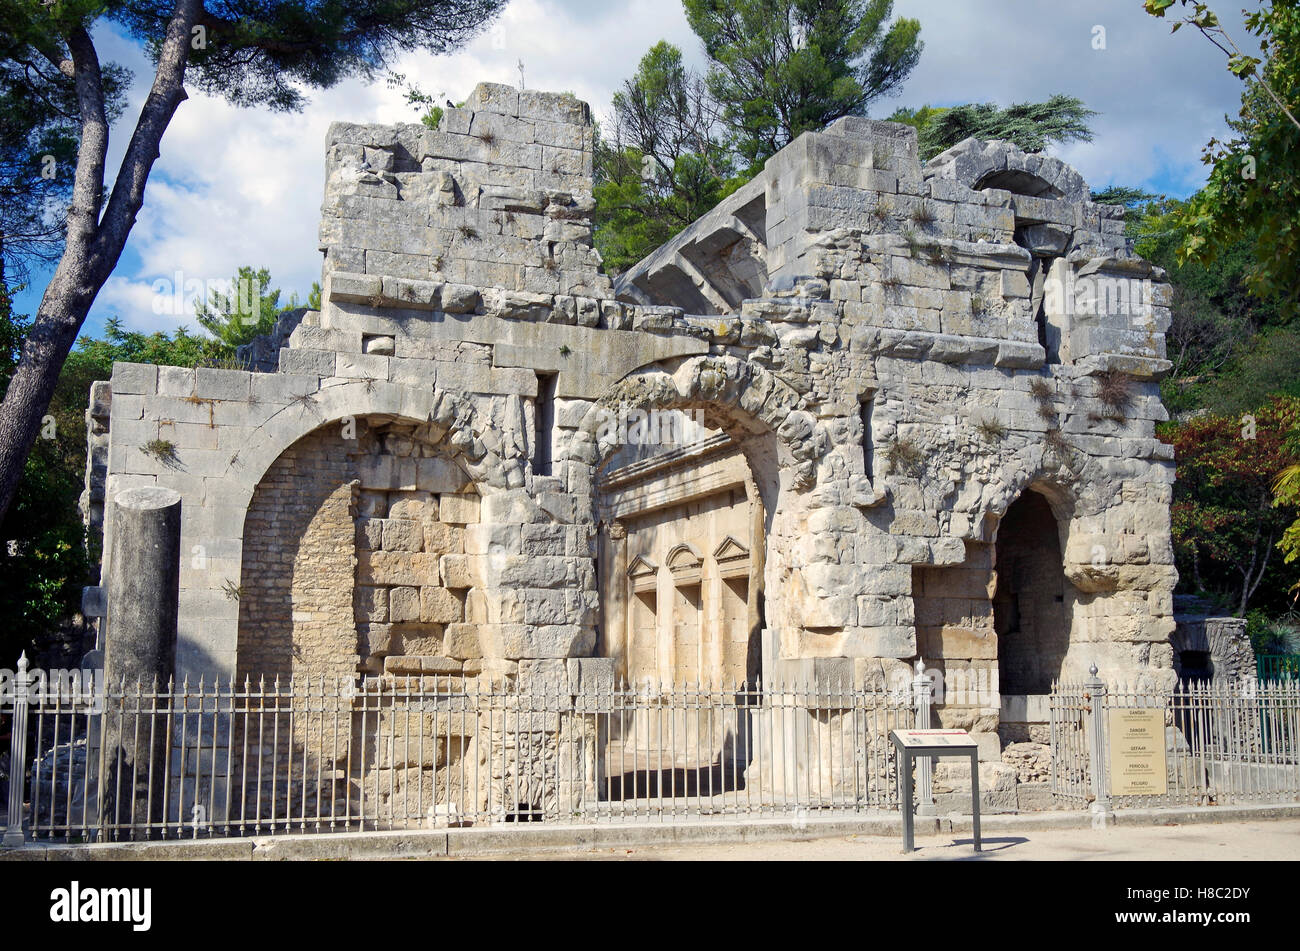 Edificio di epoca romana conosciuta come 'Tempio di Diana", Nimes, Francia. Foto Stock